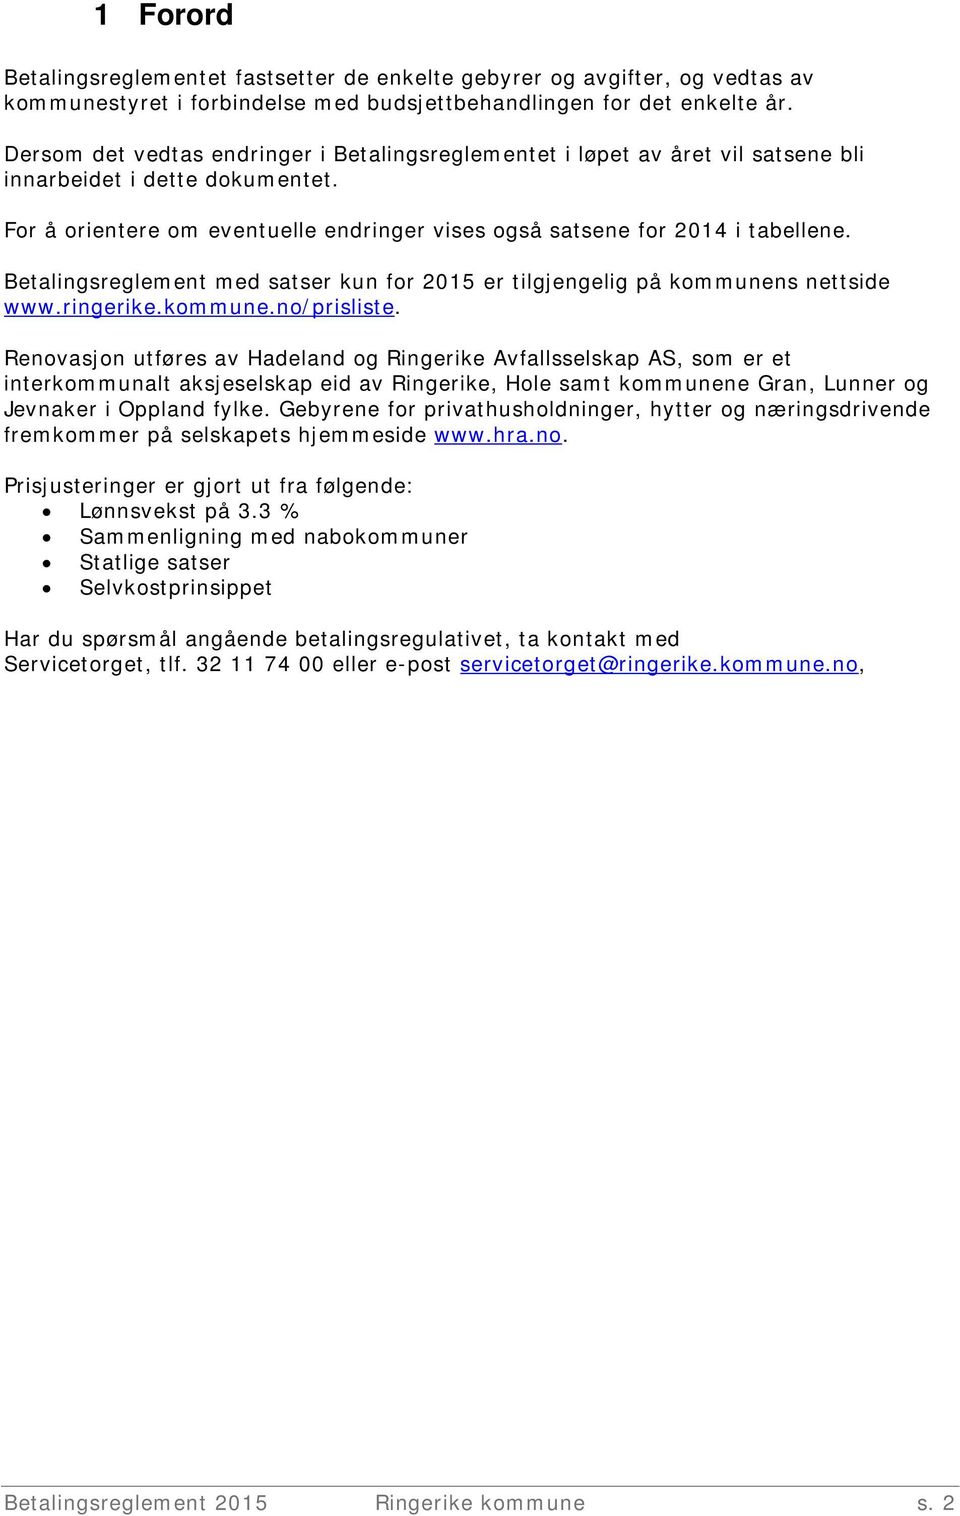 Betalingsreglement med satser kun for 2015 er tilgjengelig på kommunens nettside www.ringerike.kommune.no/prisliste.